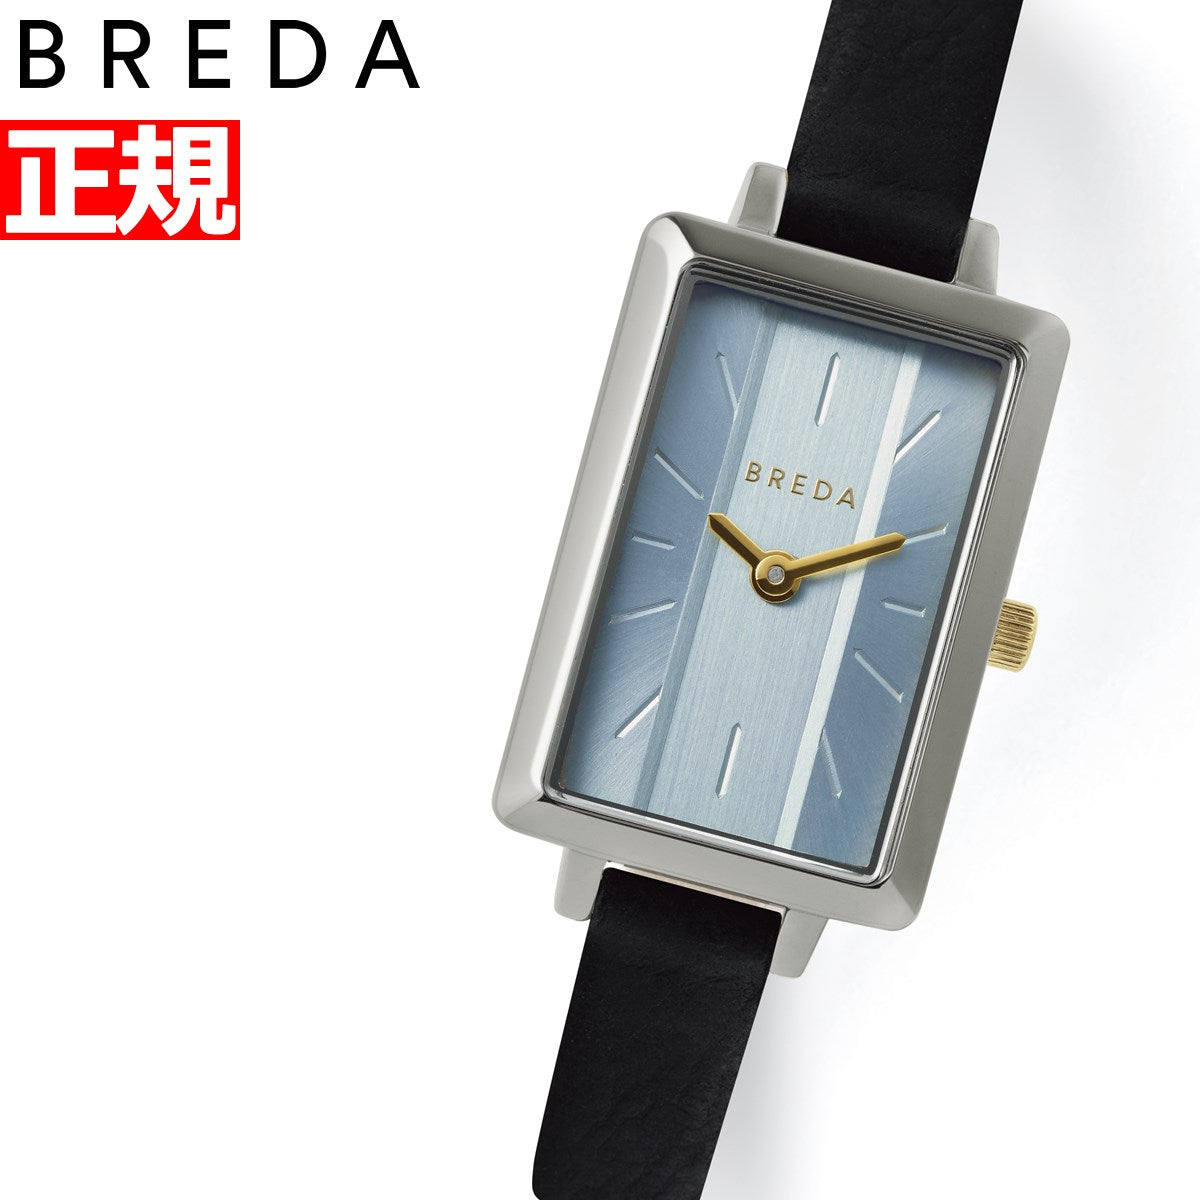 ブレダ エヴァ 腕時計 レディース 1738-set-b 日本限定モデル BREDA EVA アイスブルー